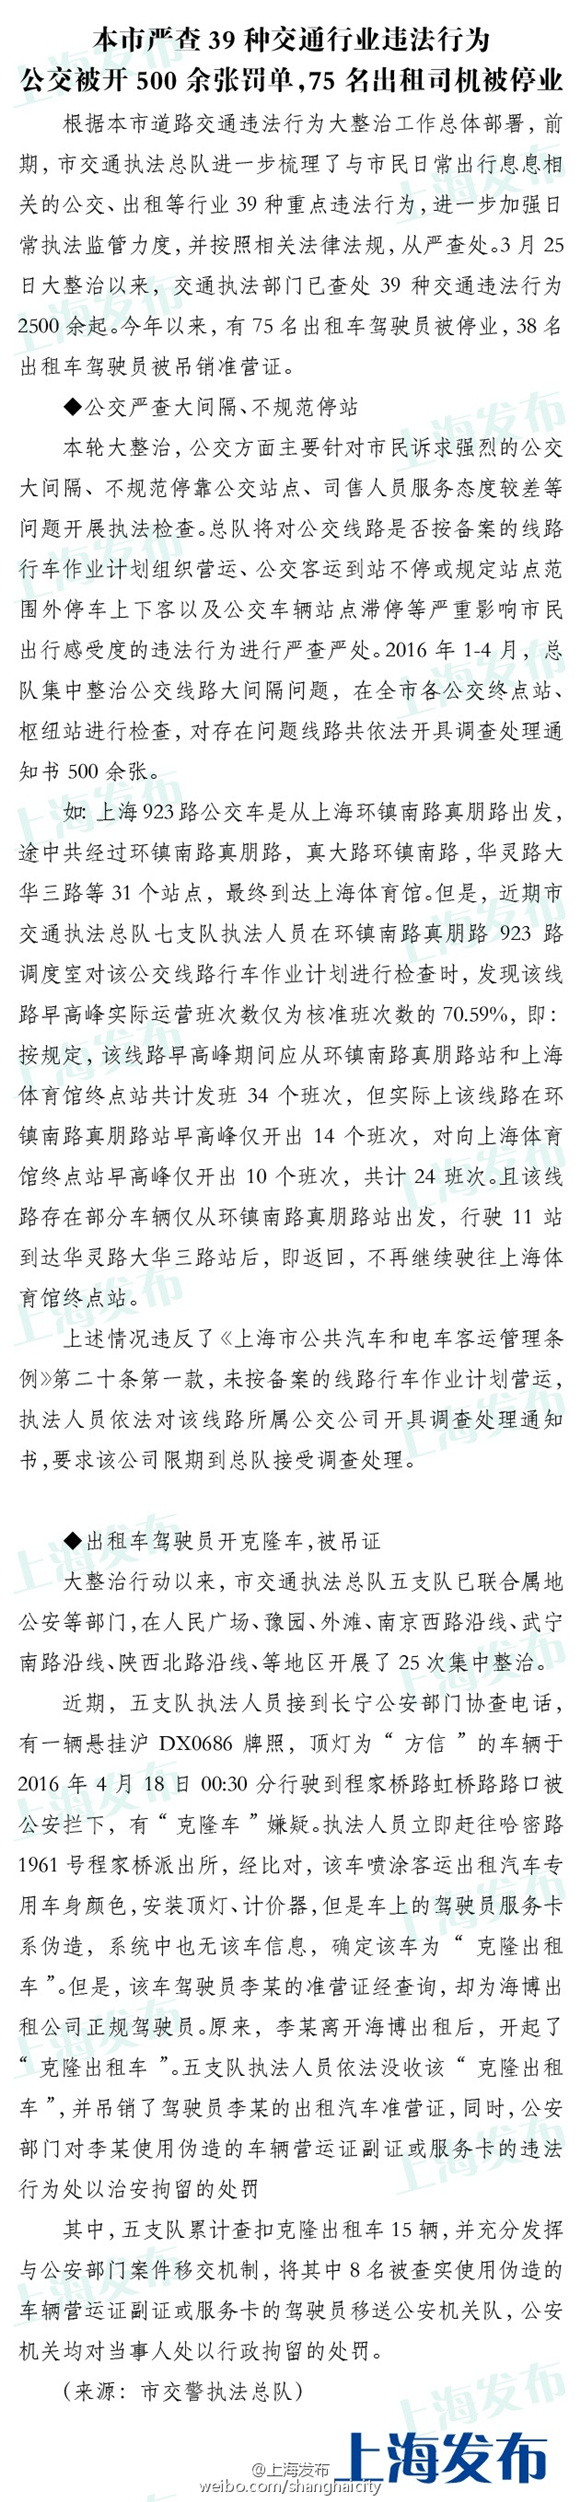 上海严查39种交通违法行为 75名出租车司机被停业